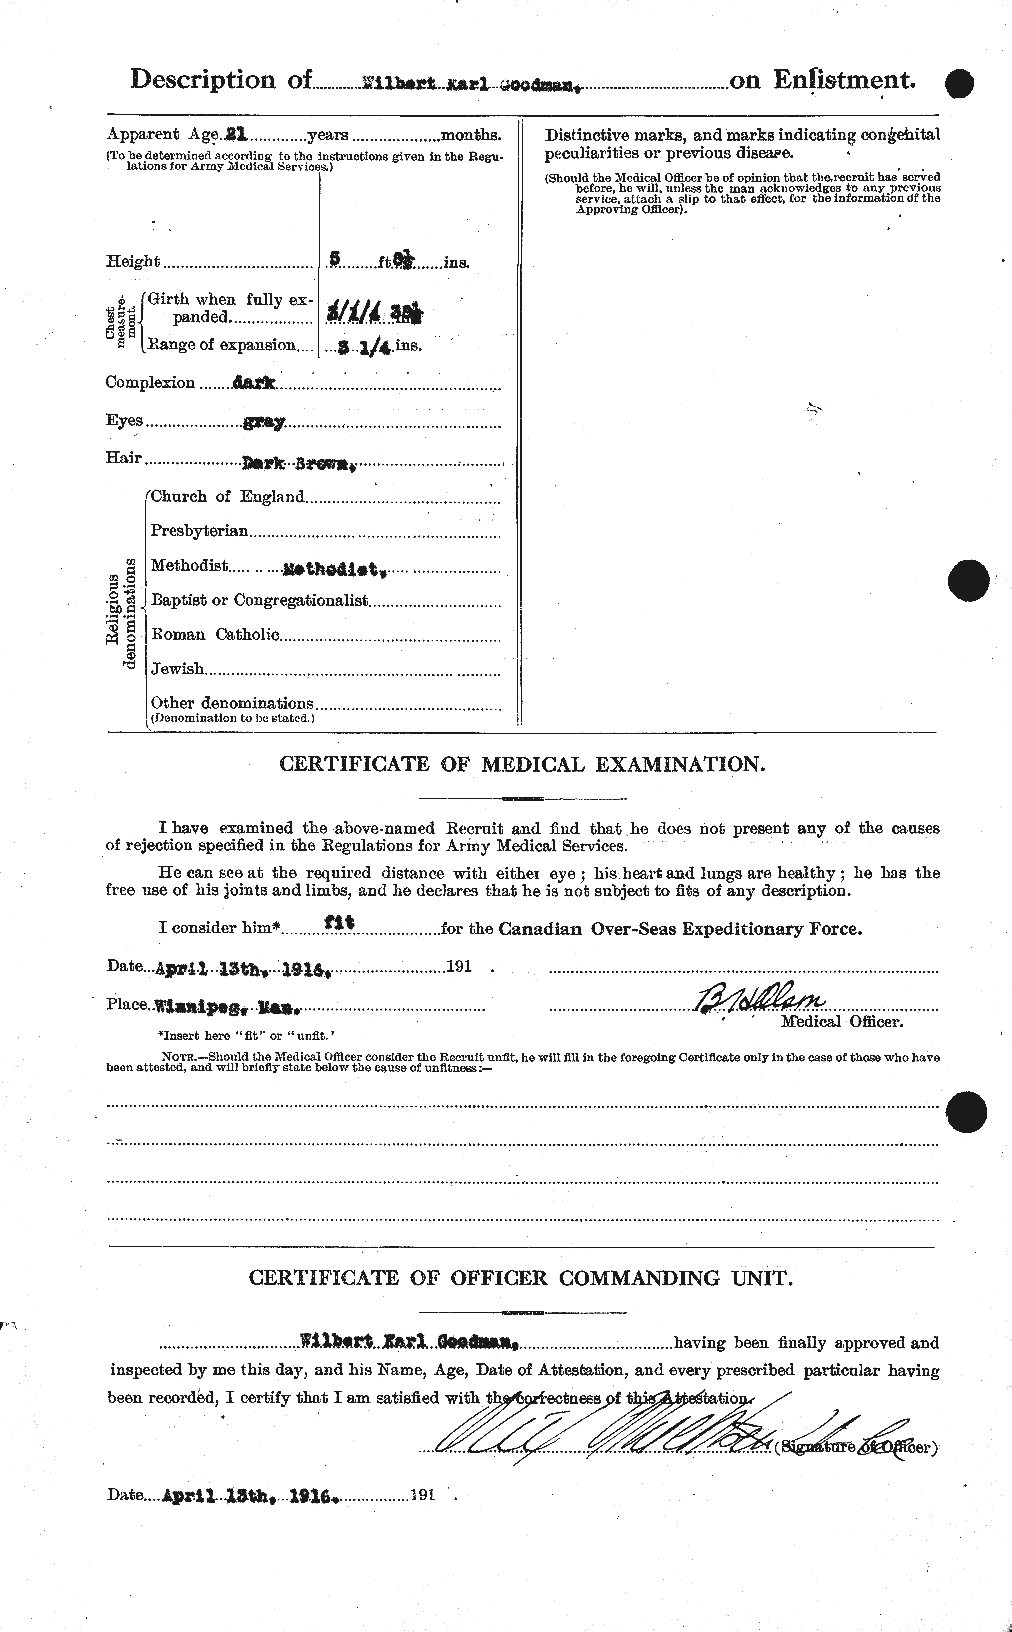 Dossiers du Personnel de la Première Guerre mondiale - CEC 356226b